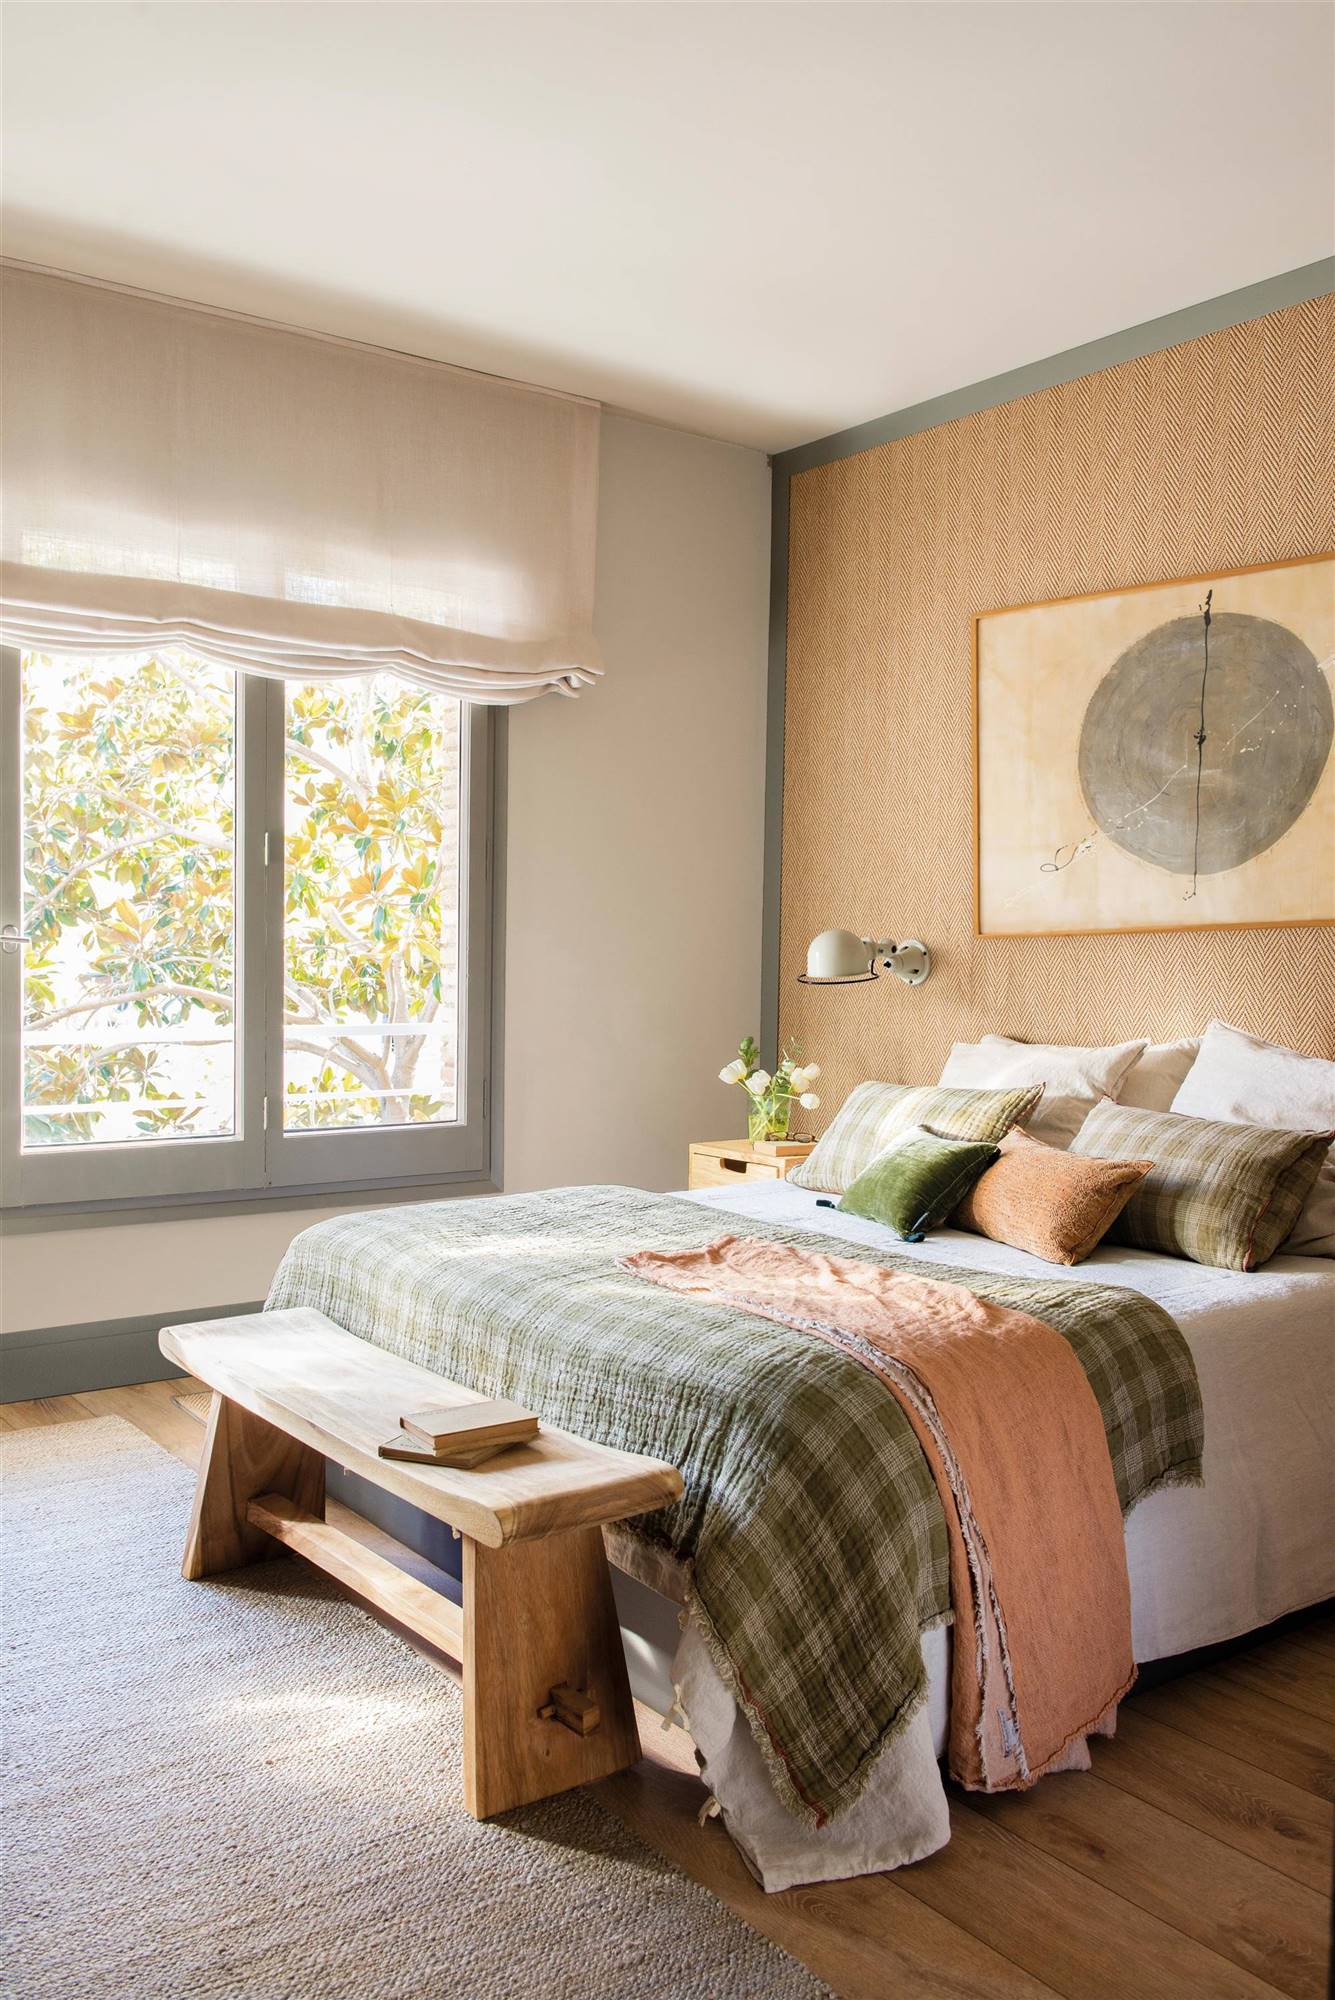 Dormitorio con pared de cabecero revestido de moqueta, cuadro, banco de madera y colcha de cuadros.